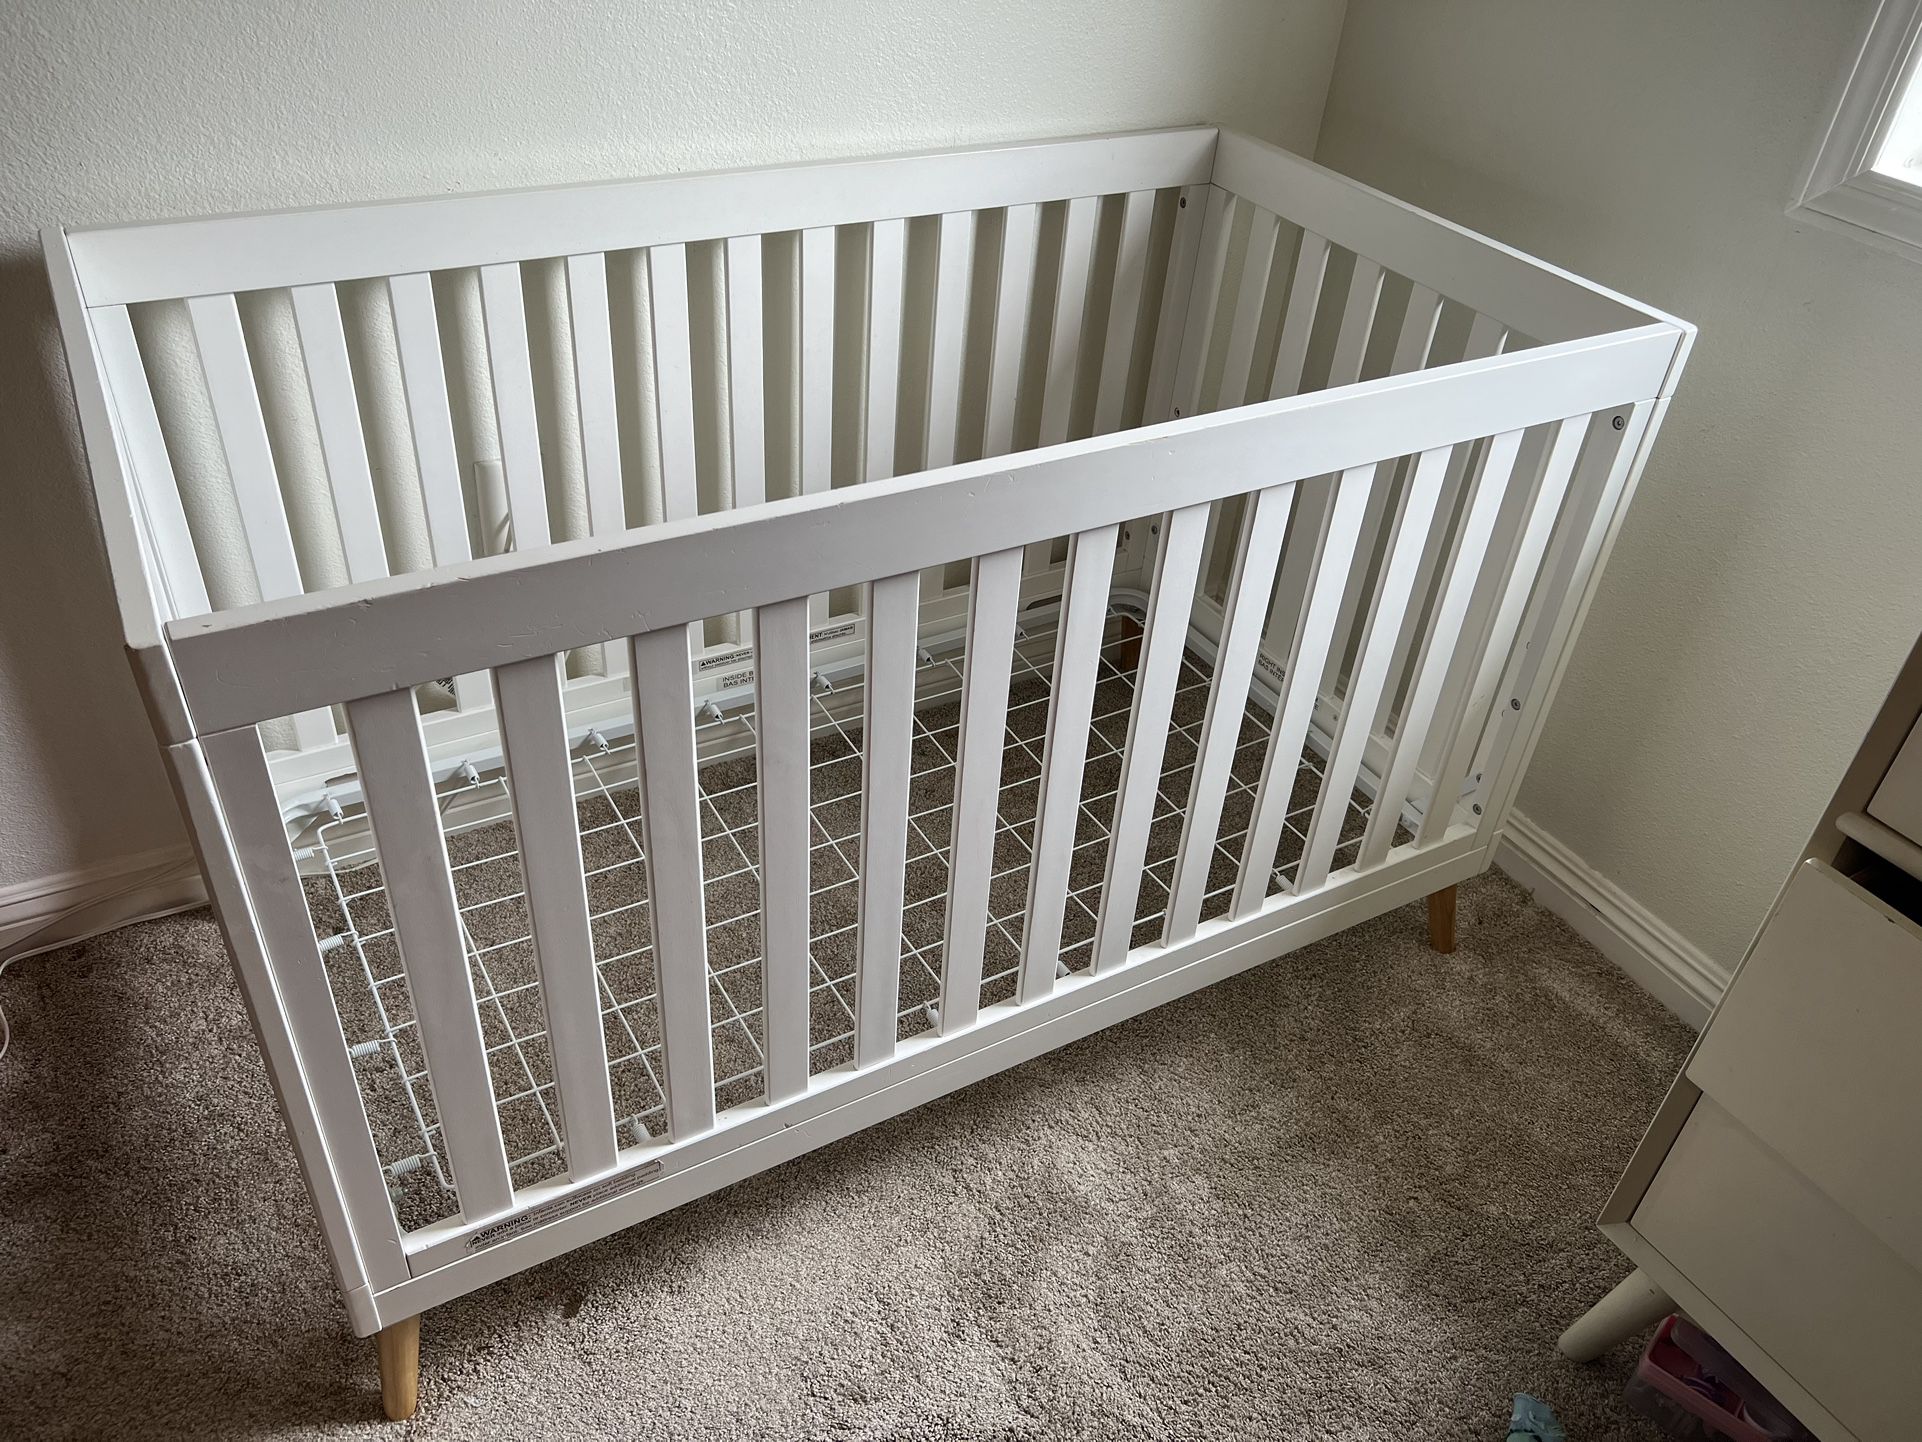 Delta Children Essex 4 In 1 Convertible Baby Crib 